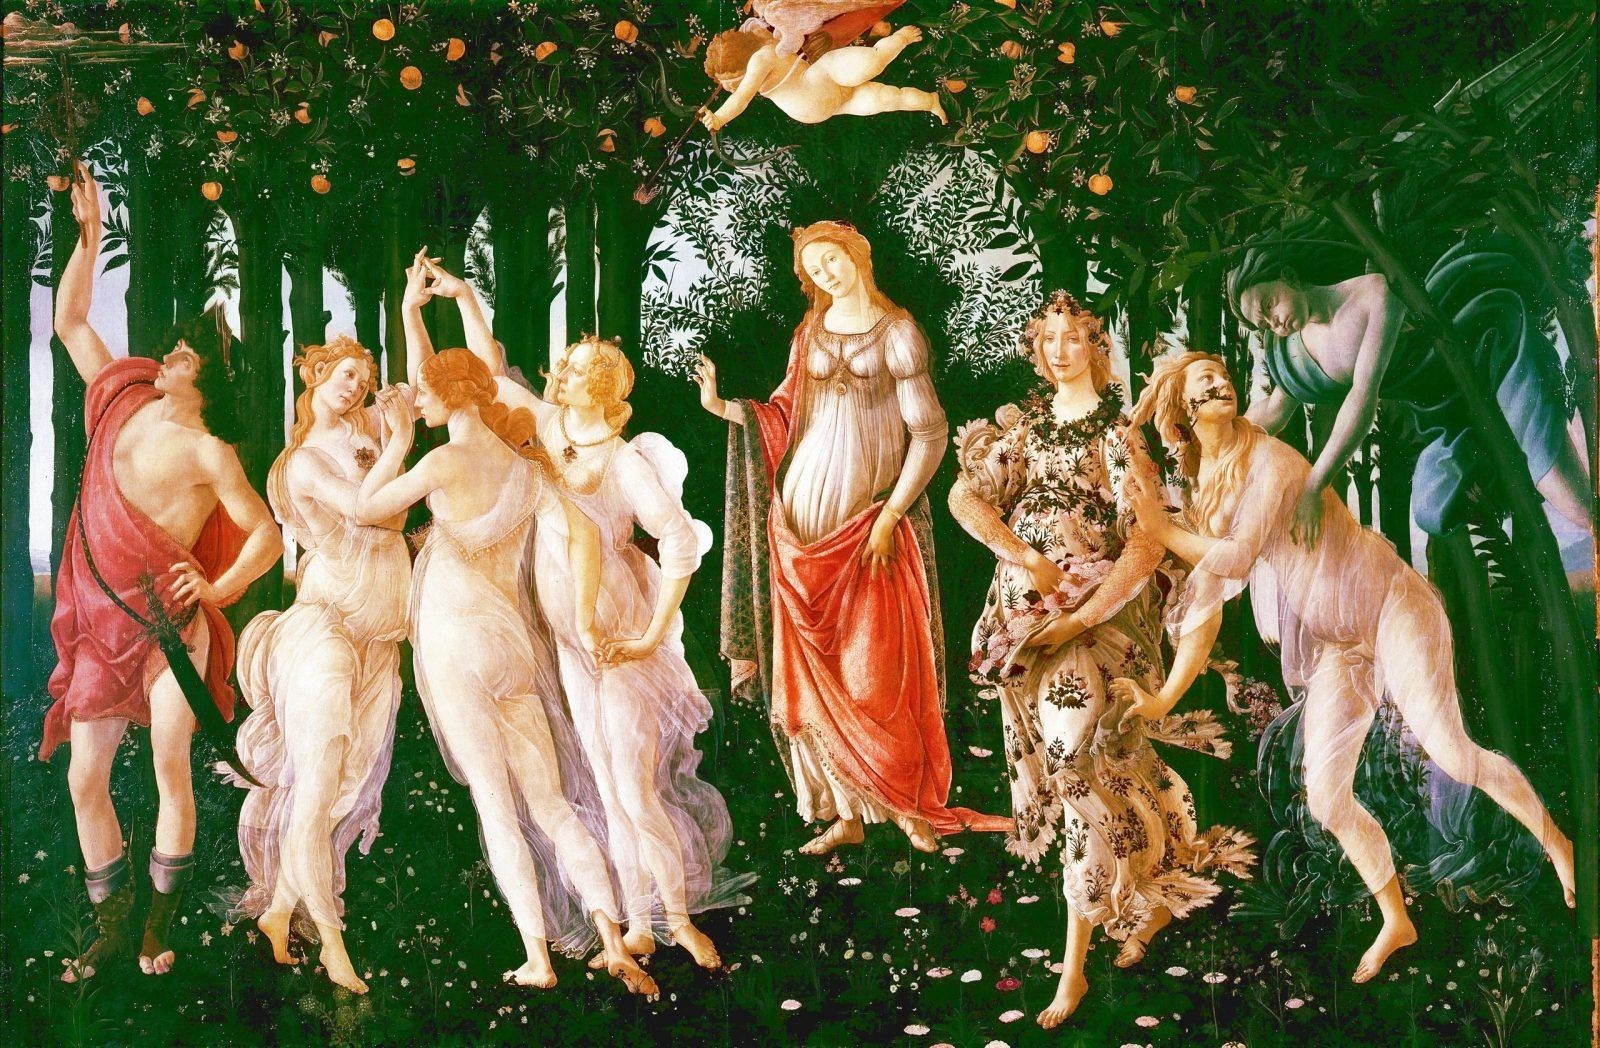 «Весна» (Primavera, 1482 г.) — самое известное и самое загадочное произведение Боттичелли. Картина вместе с «Палладой и кентавром» (1482-1483) Боттичелли и «Мадонной с Младенцем» неизвестного автора предназначалась для украшения флорентийского дворца Лоренцо ди Пьерфранческо де Медичи, или Лоренцо Пополано, кузена Лоренцо Великолепного. На создание полотна живописца вдохновил, в частности, фрагмент из поэмы Лукреция «О природе вещей»…